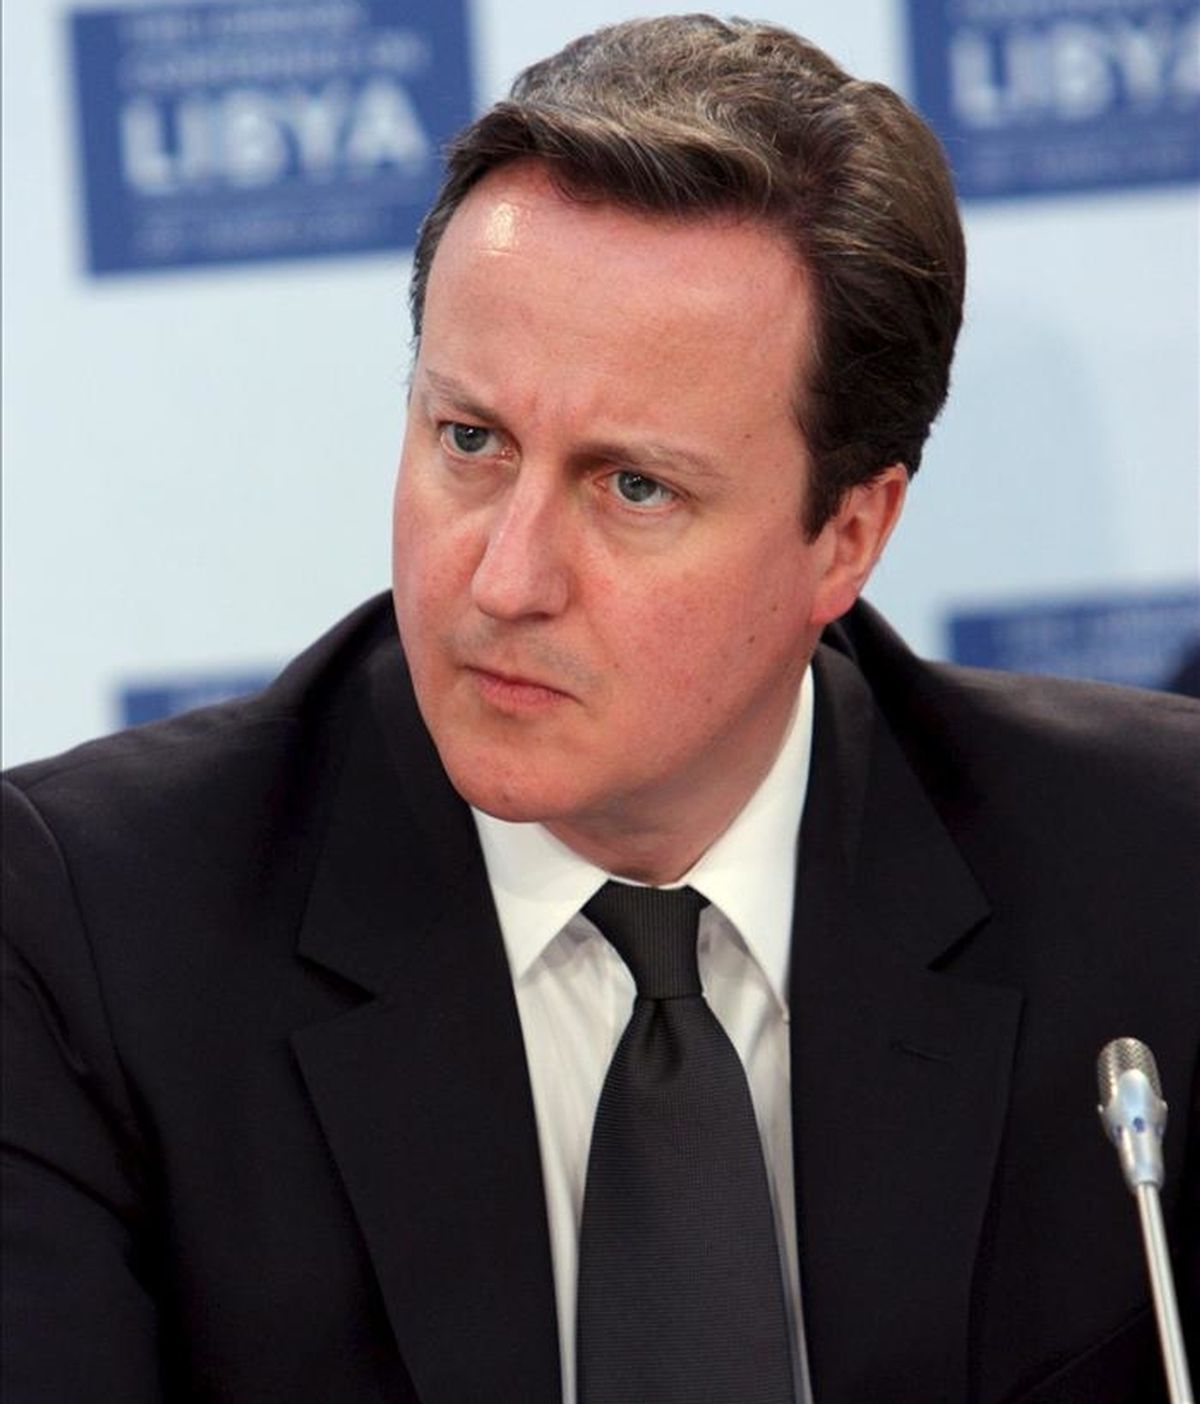 Fotografía cedida por el Ministerio británico de Asuntos Exteriores del primer ministro británico, David Cameron. EFE/Archivo